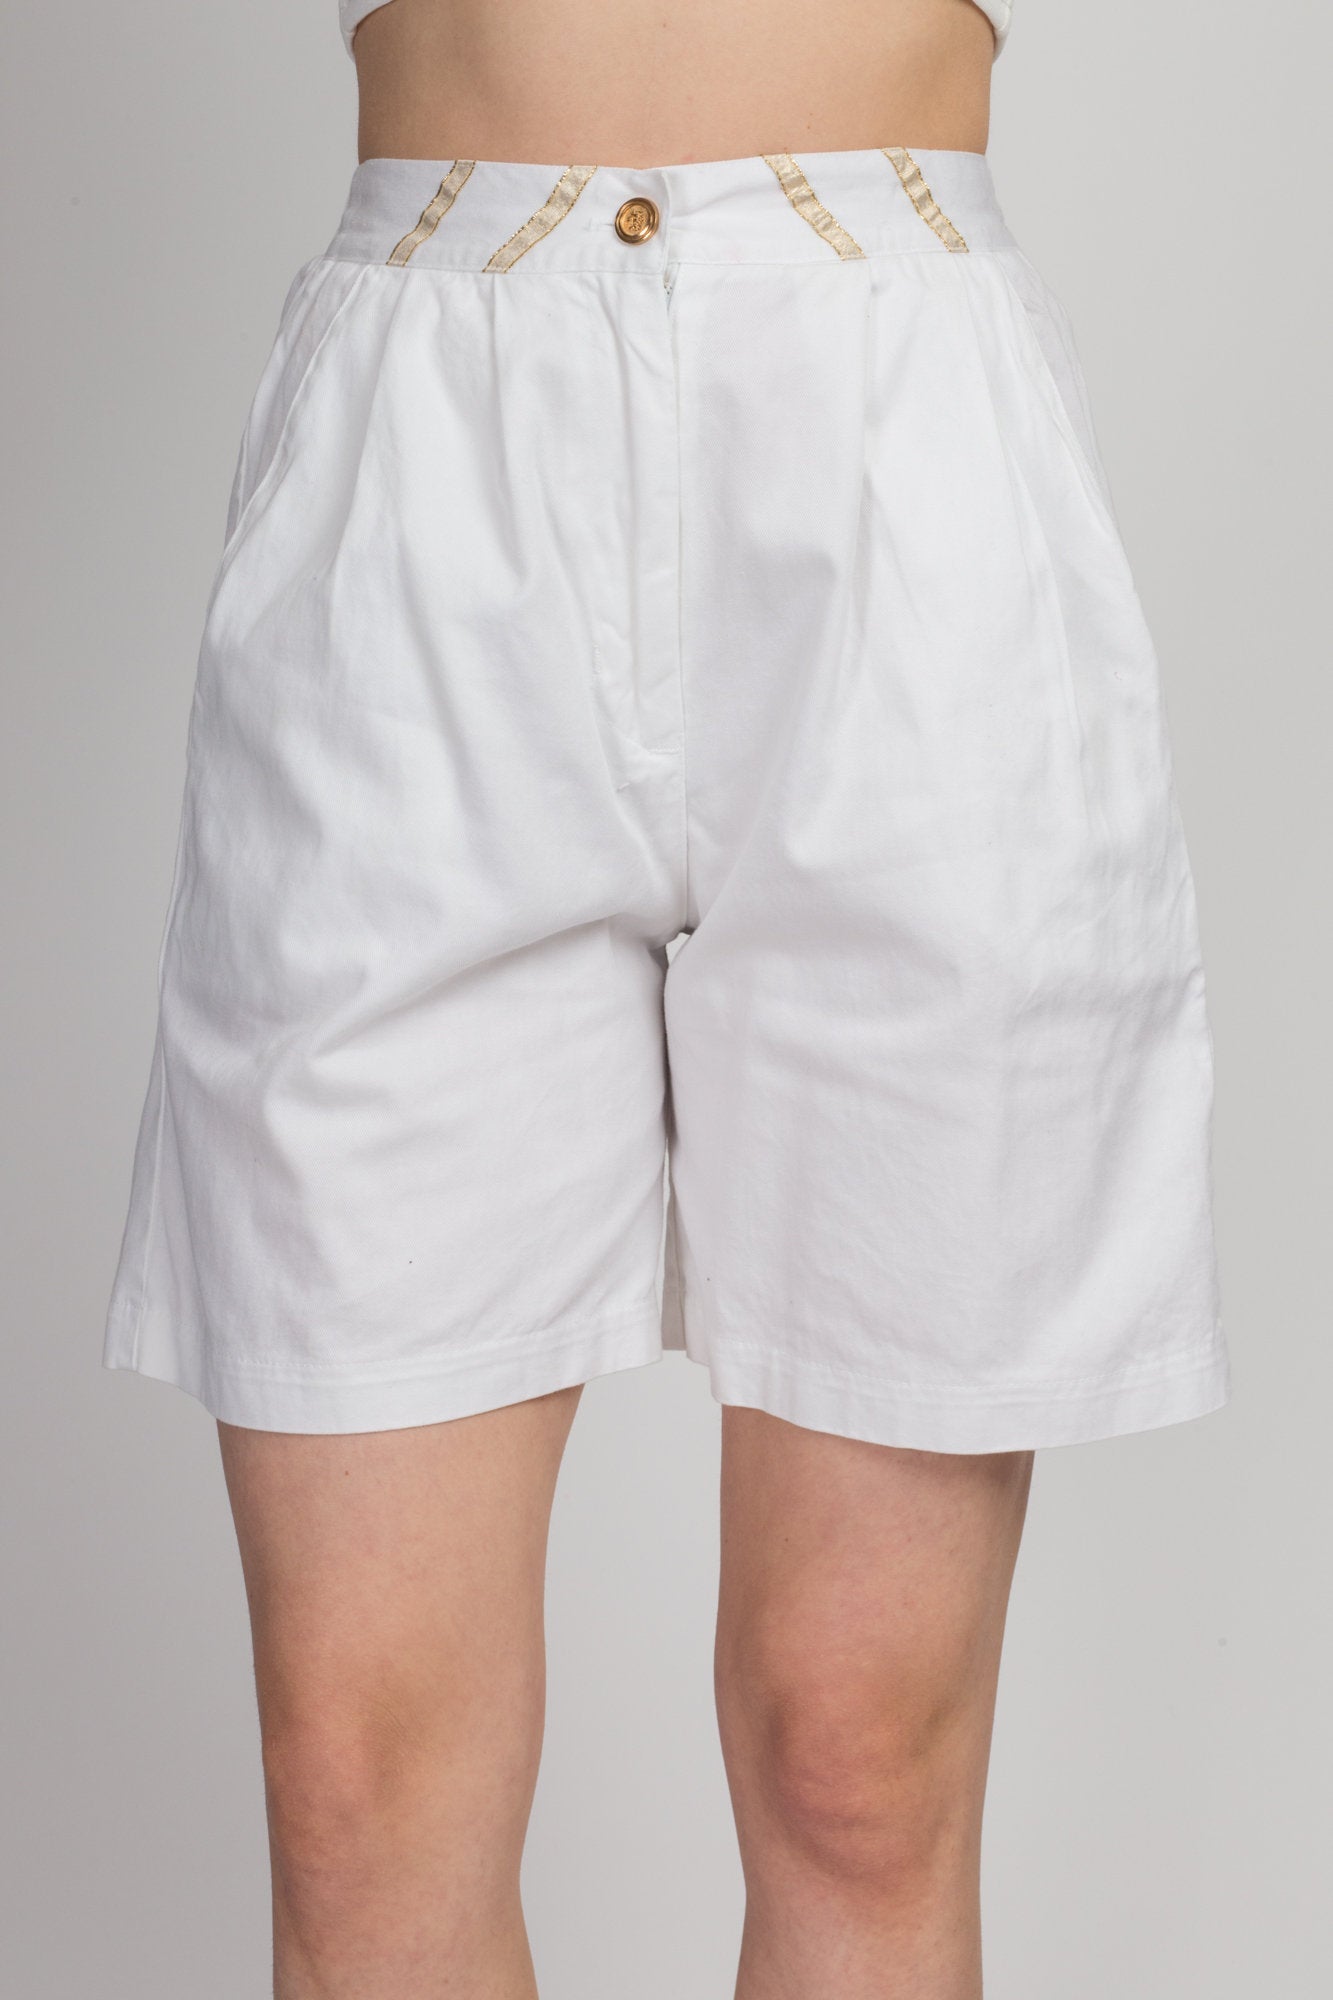 90s High Waist White Shorts - Medium 